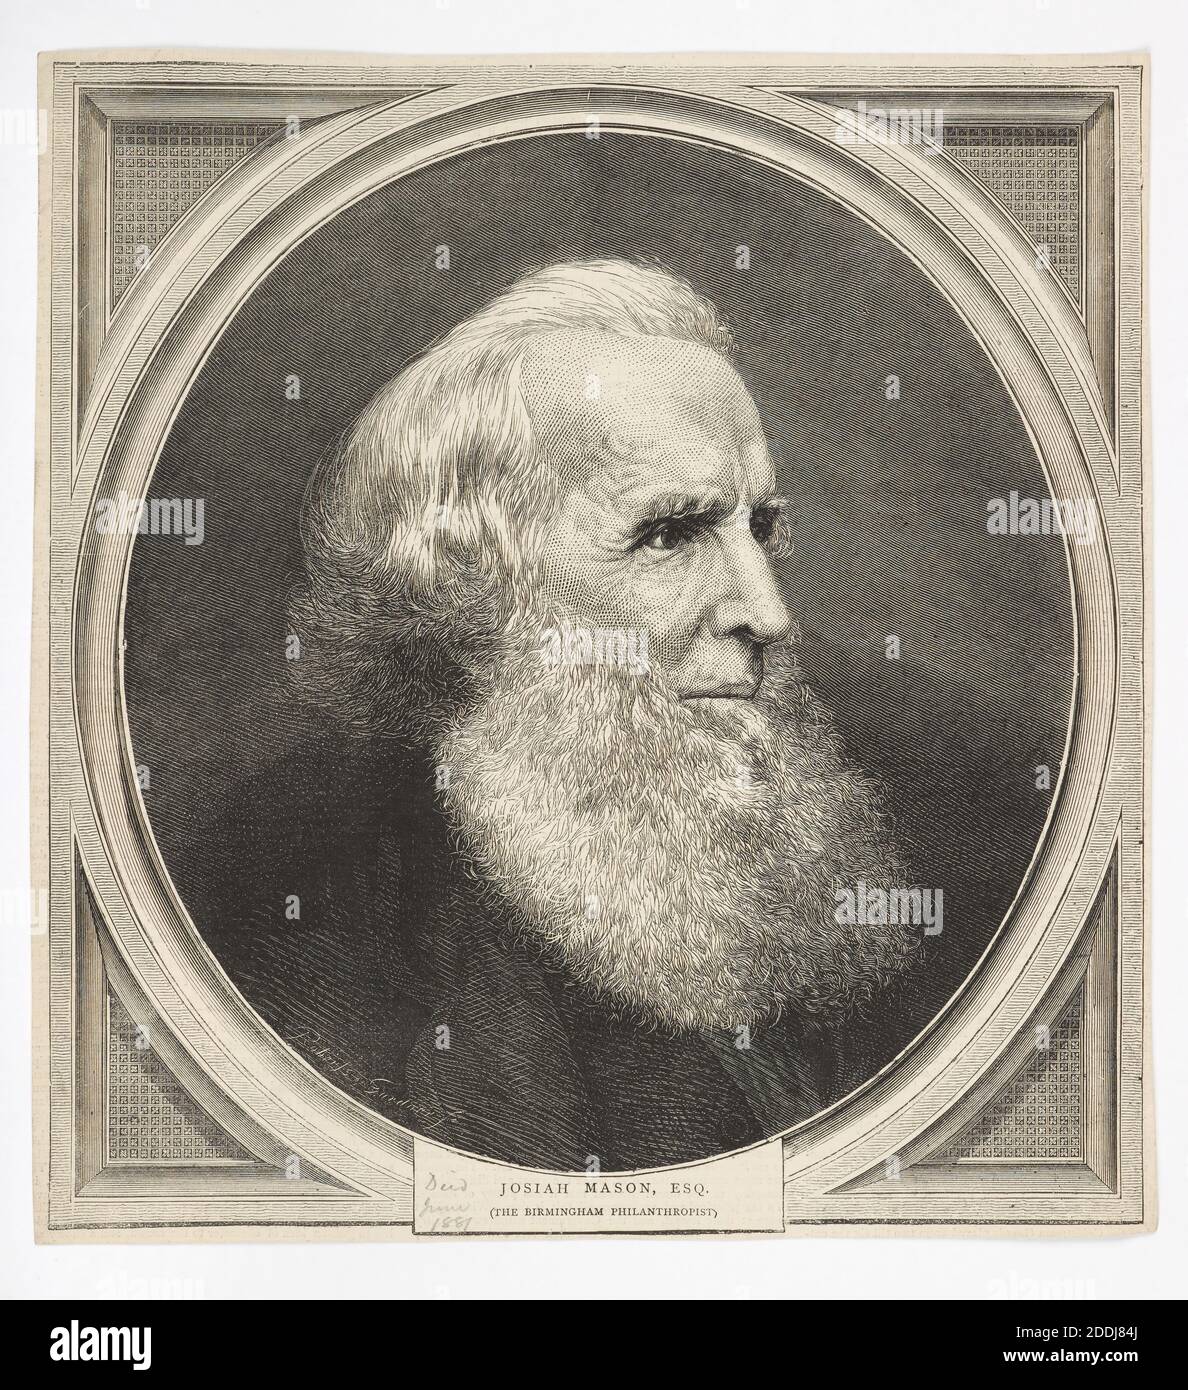 Josiah Mason, Engraving, riprodotto su giornale o rivista. Josiah Mason, indistralista, fondò anche un orfanotrofio a Erdington, Birmingham, nel XIX secolo Foto Stock